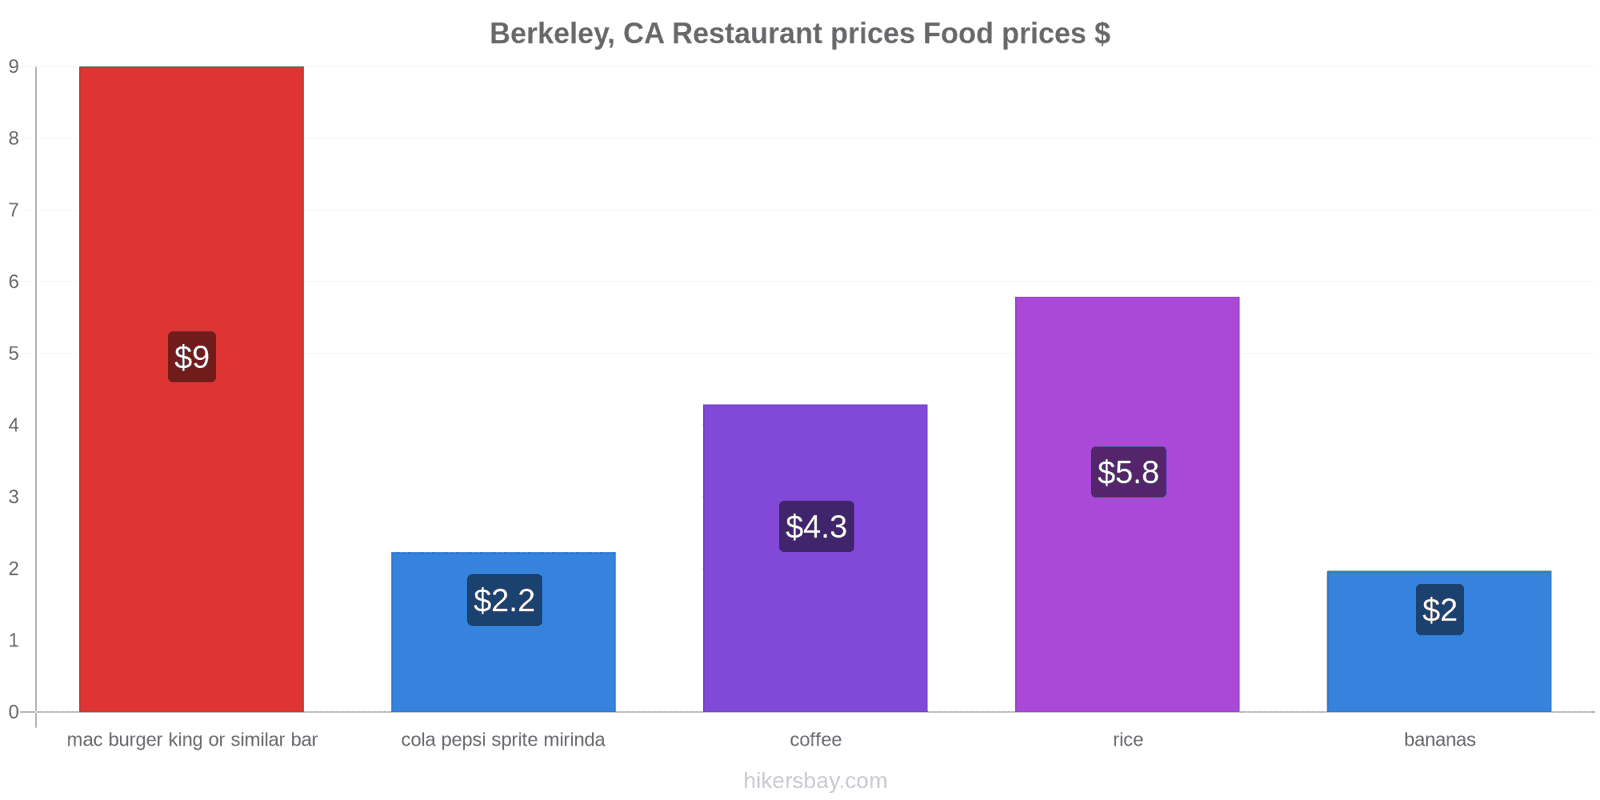 Berkeley, CA price changes hikersbay.com